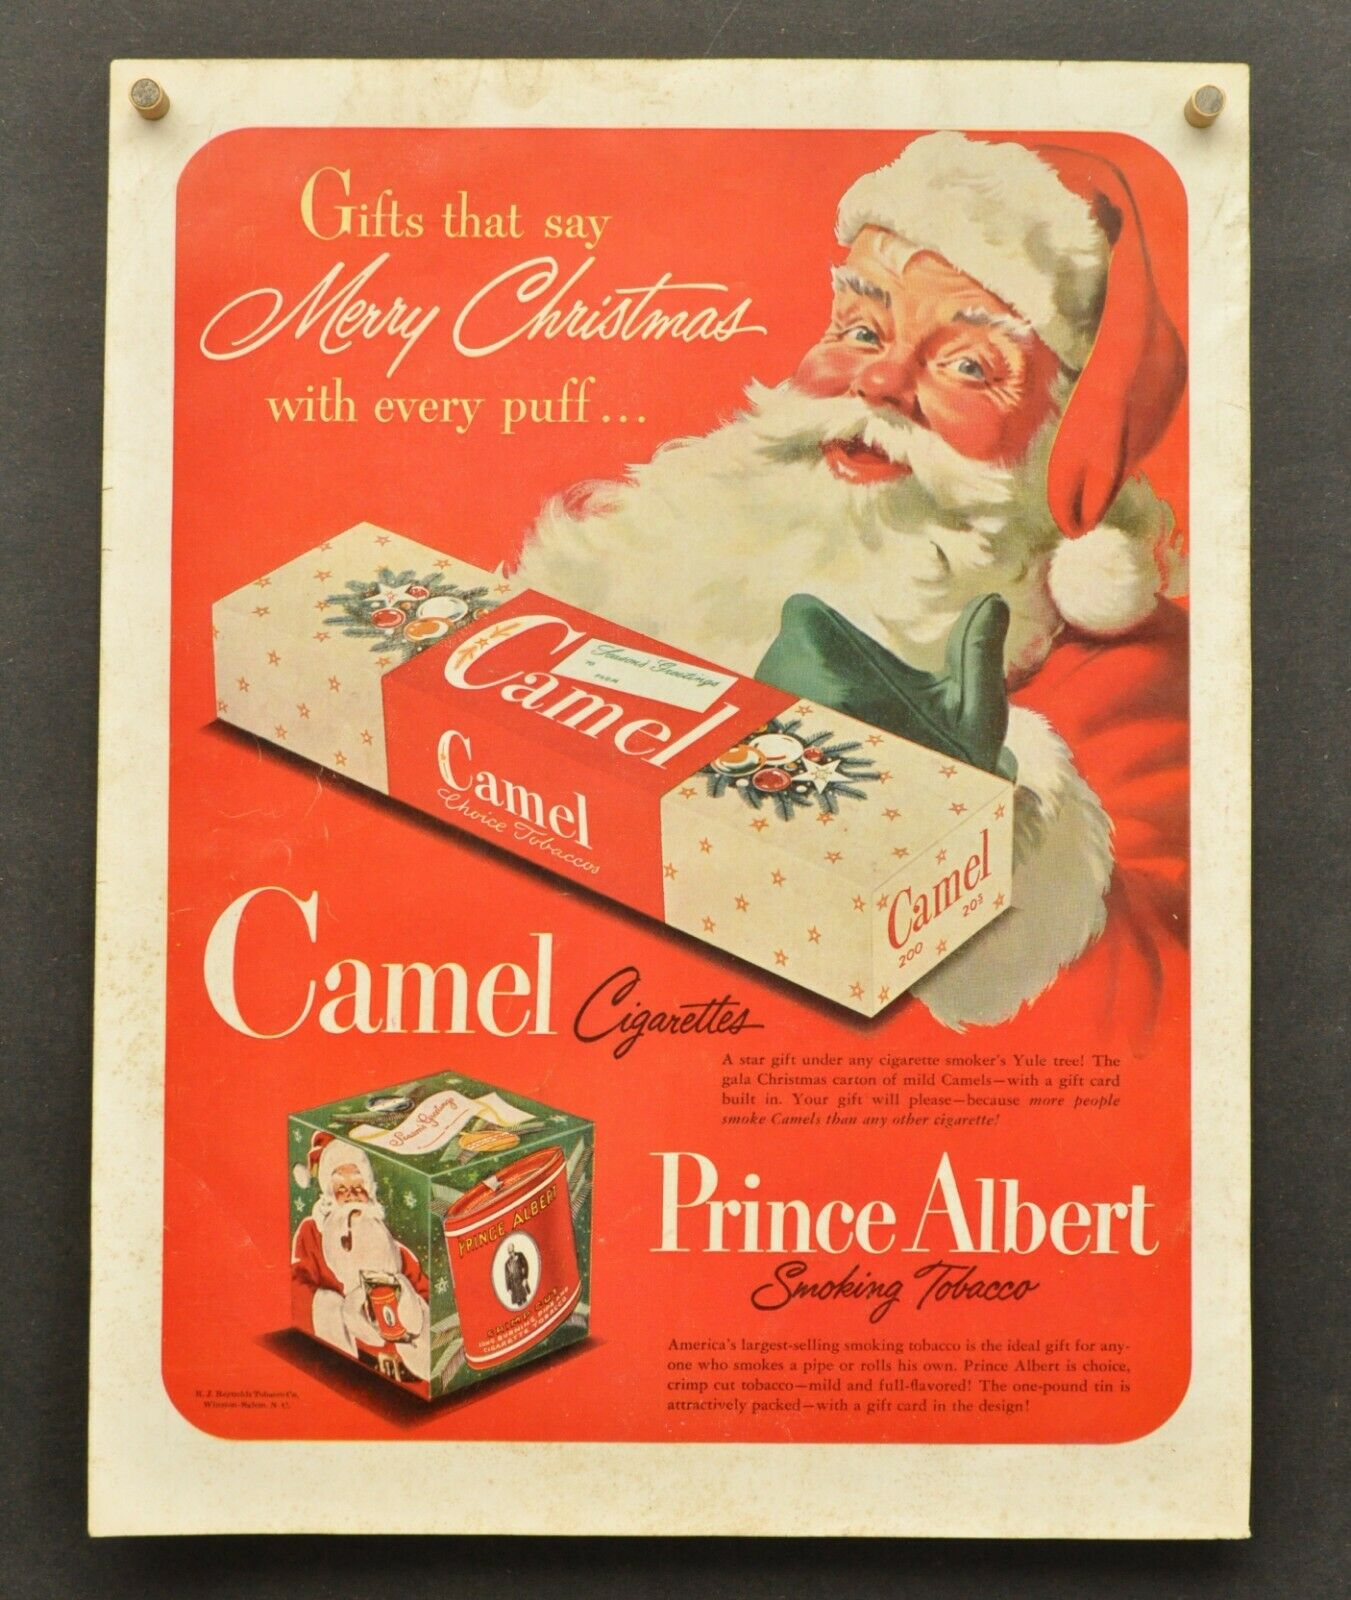 Papá Noel en la publicidad de Prince Albert Smoking Tobacco en 1949